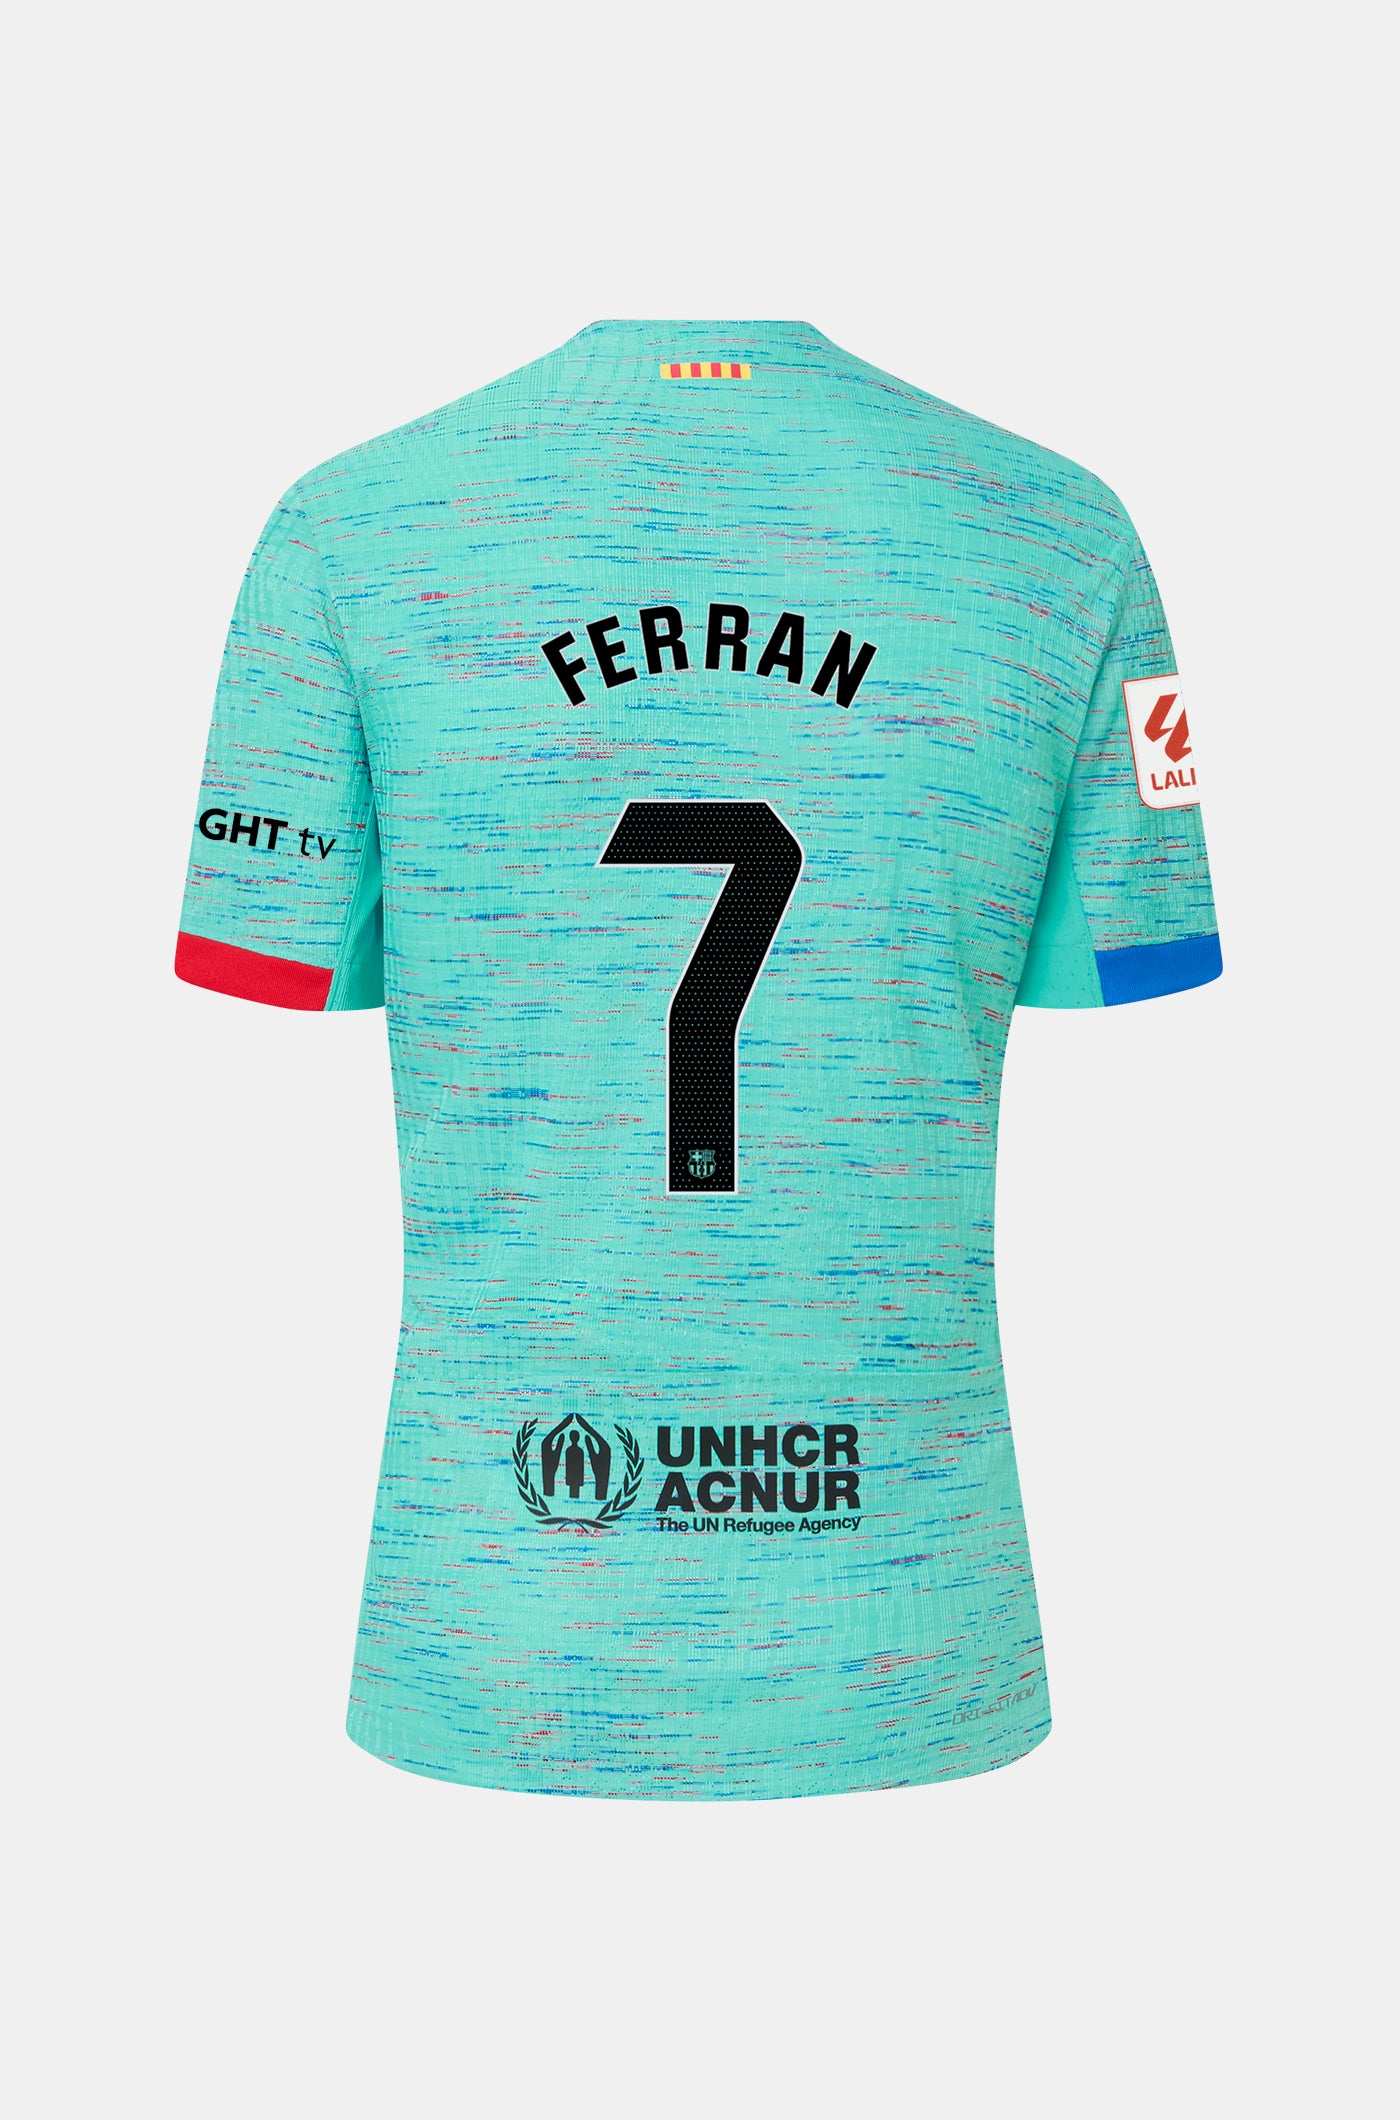 LFP  FC Barcelona third shirt 23/24 – Junior  - FERRAN